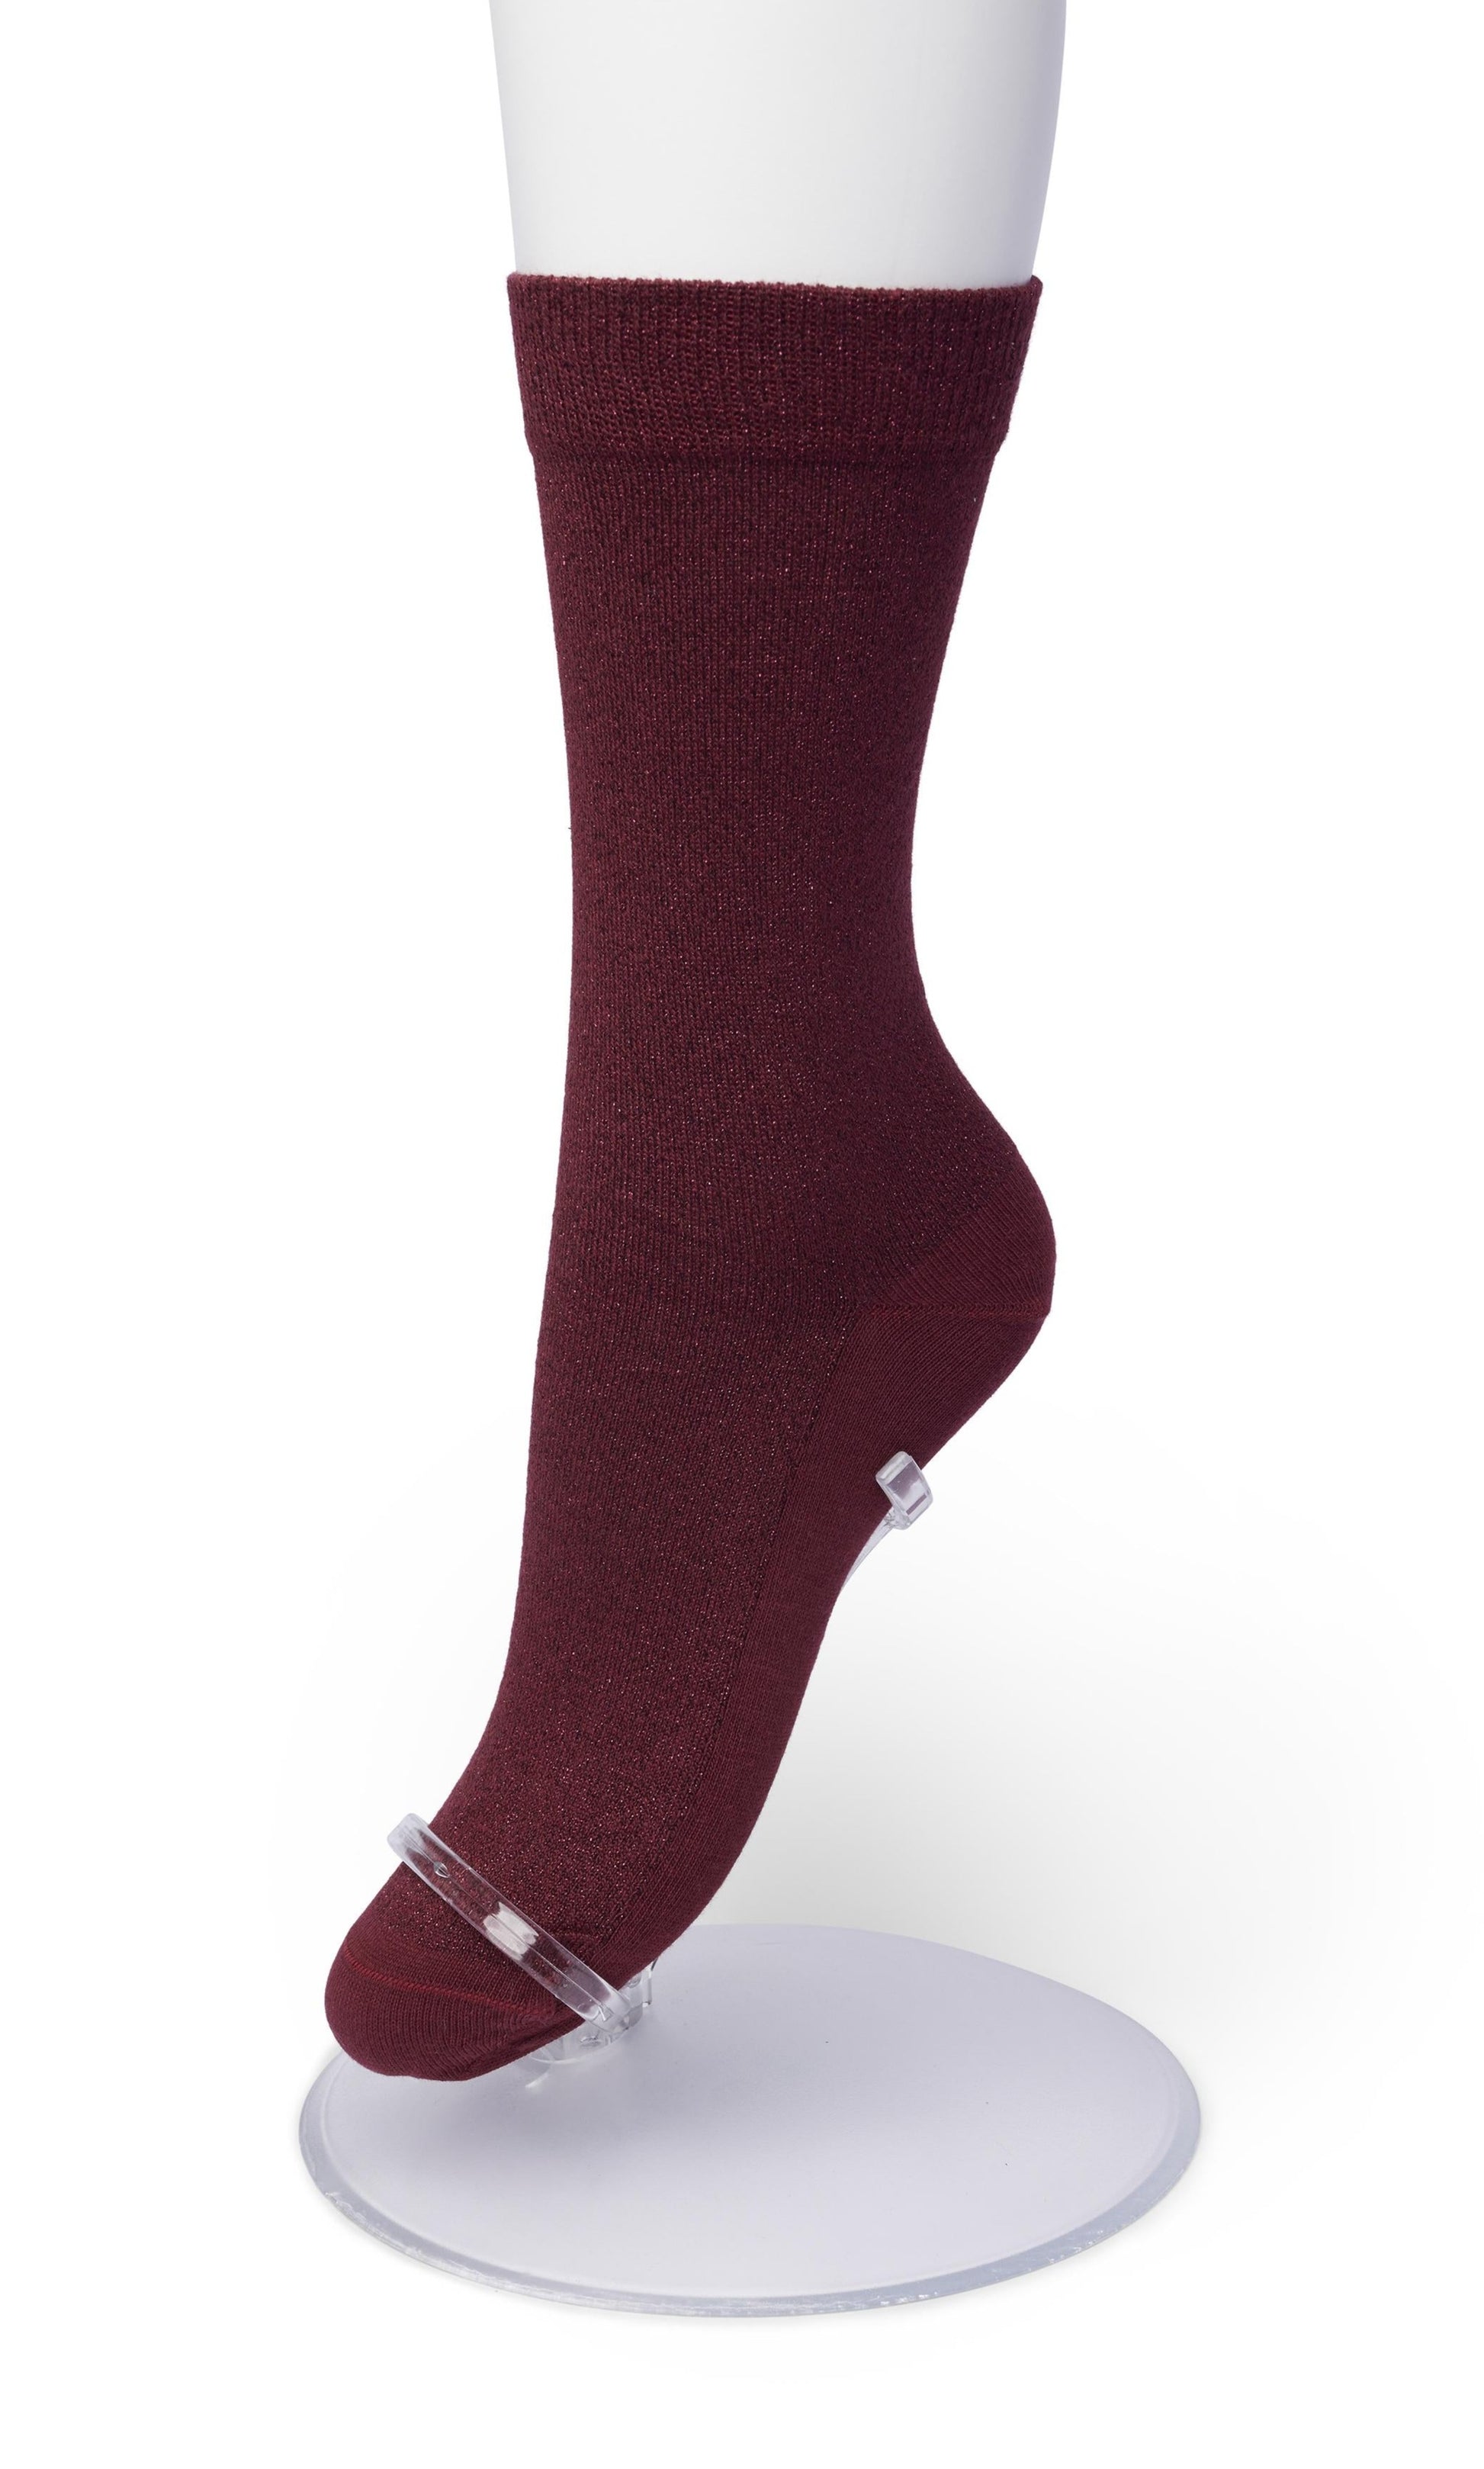 Bonnie Doon BN25.11.38 Cotton Sparkle Socks - Maroon (rhododendron) socks with sparkly glitter lam̩ lurex